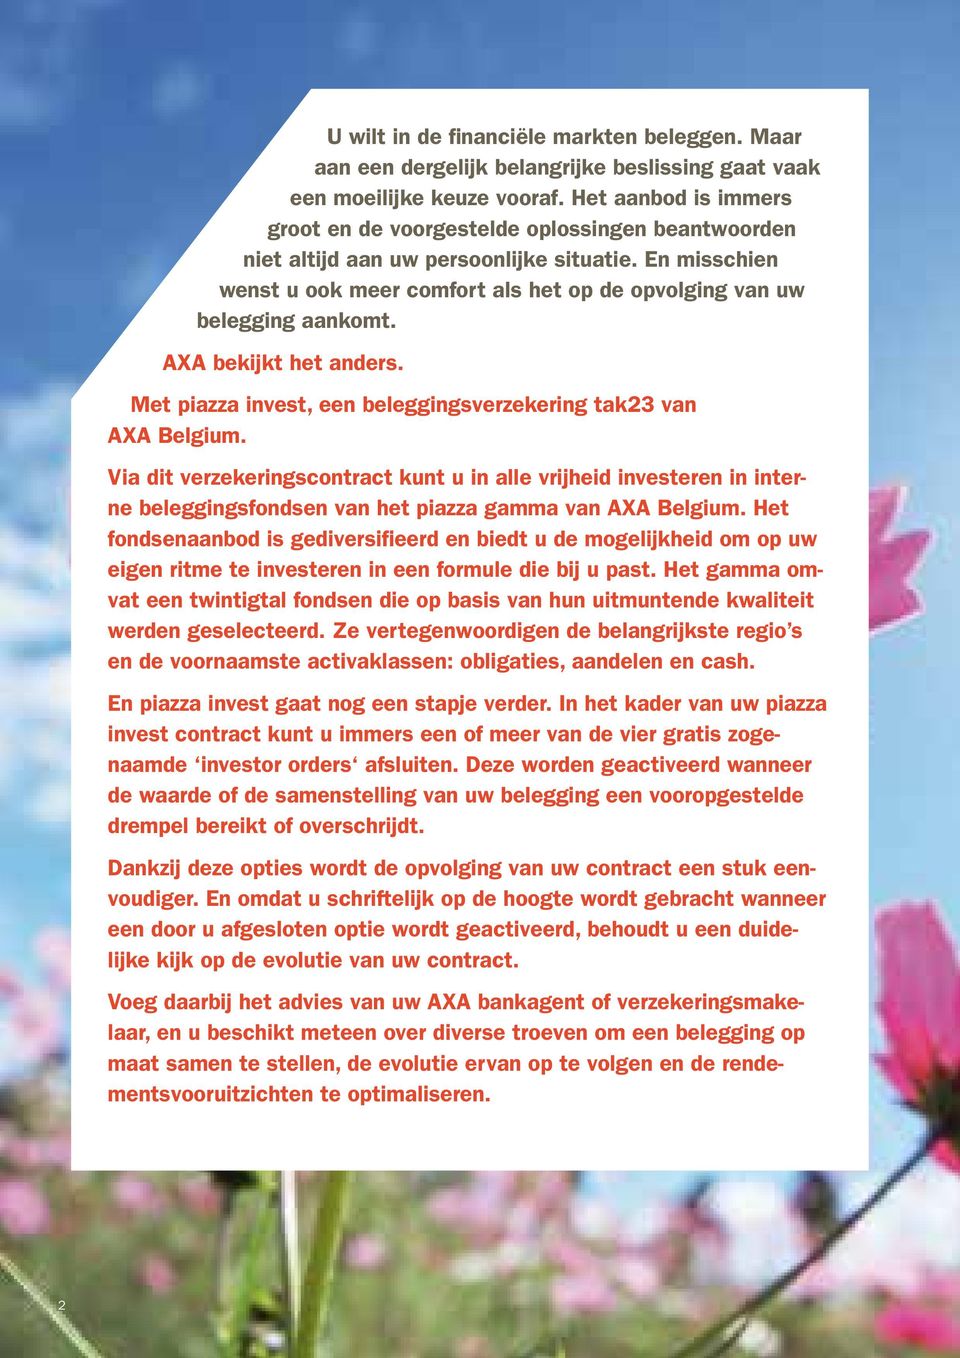 AXA bekijkt het anders. Met piazza invest, een beleggingsverzekering tak23 van AXA Belgium.